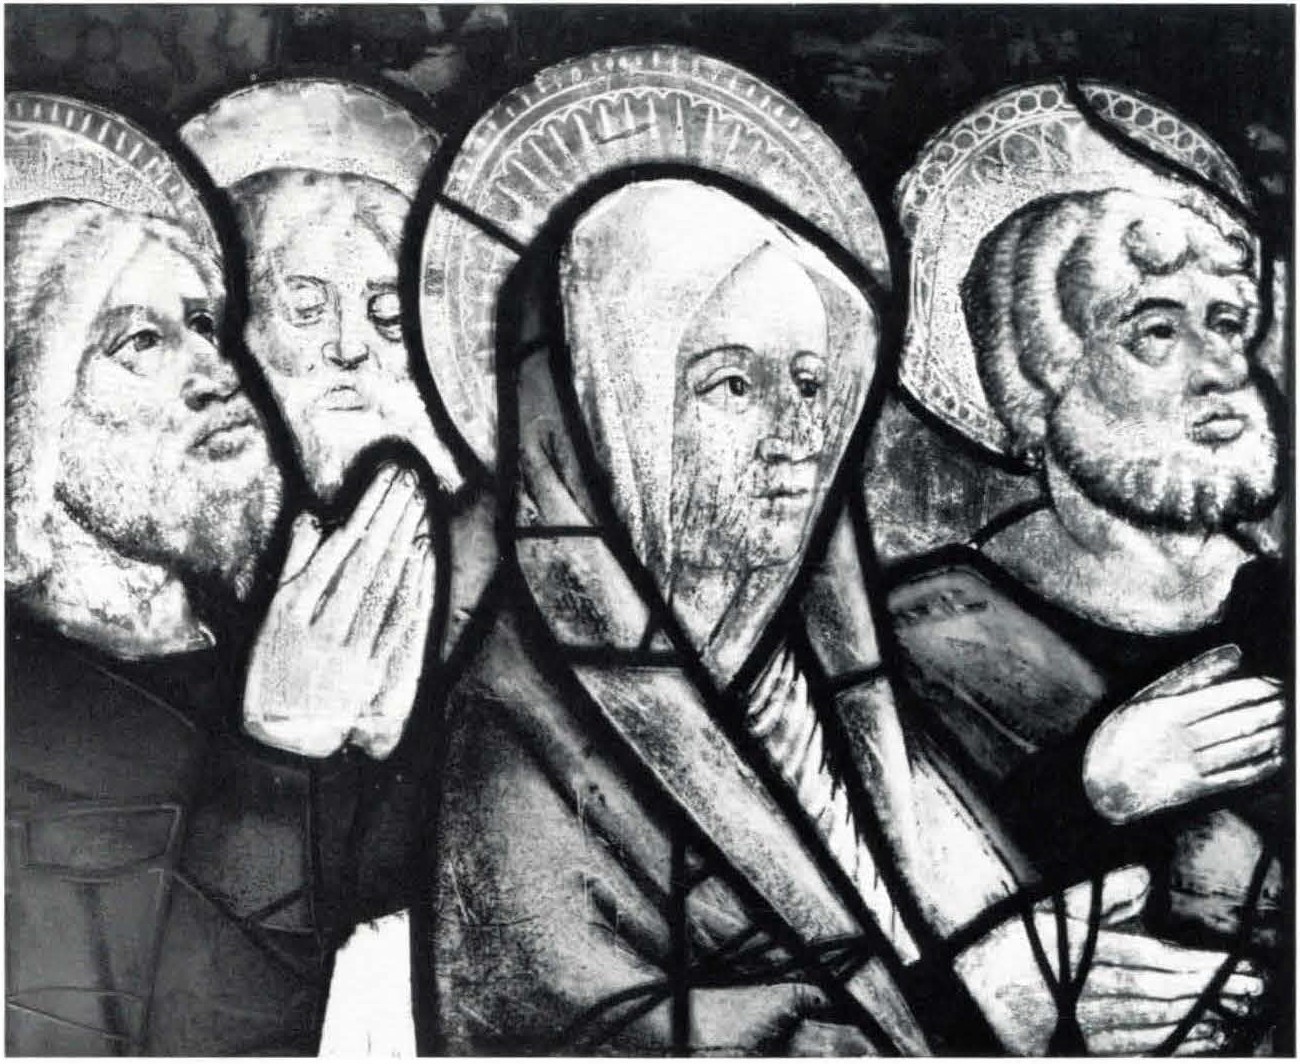 VIRGIN (?) WITH THREE APOSTLES (?) PRAYING